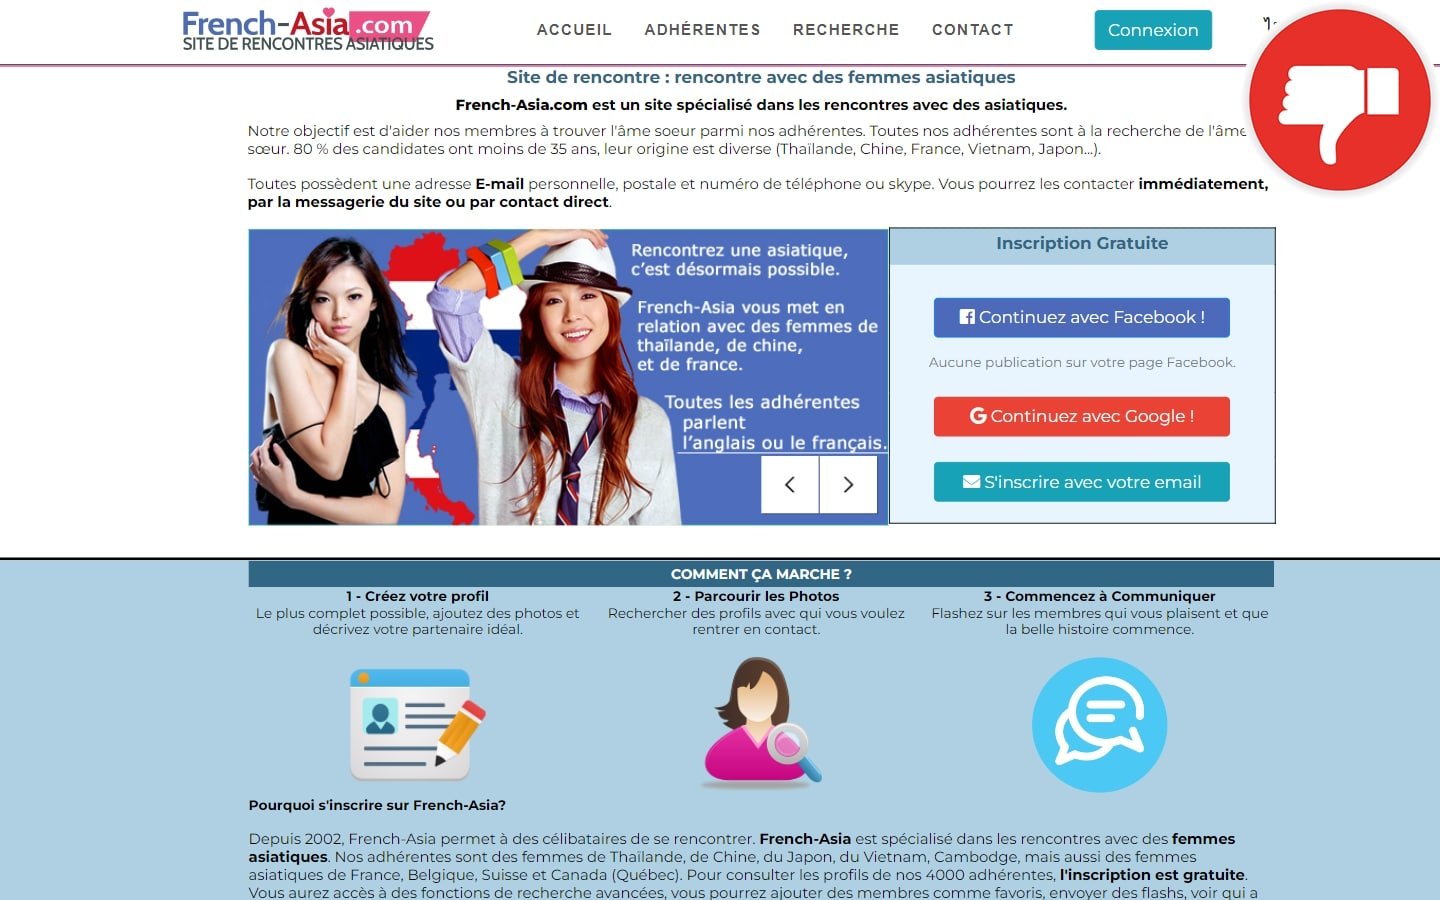 French-Asia.com